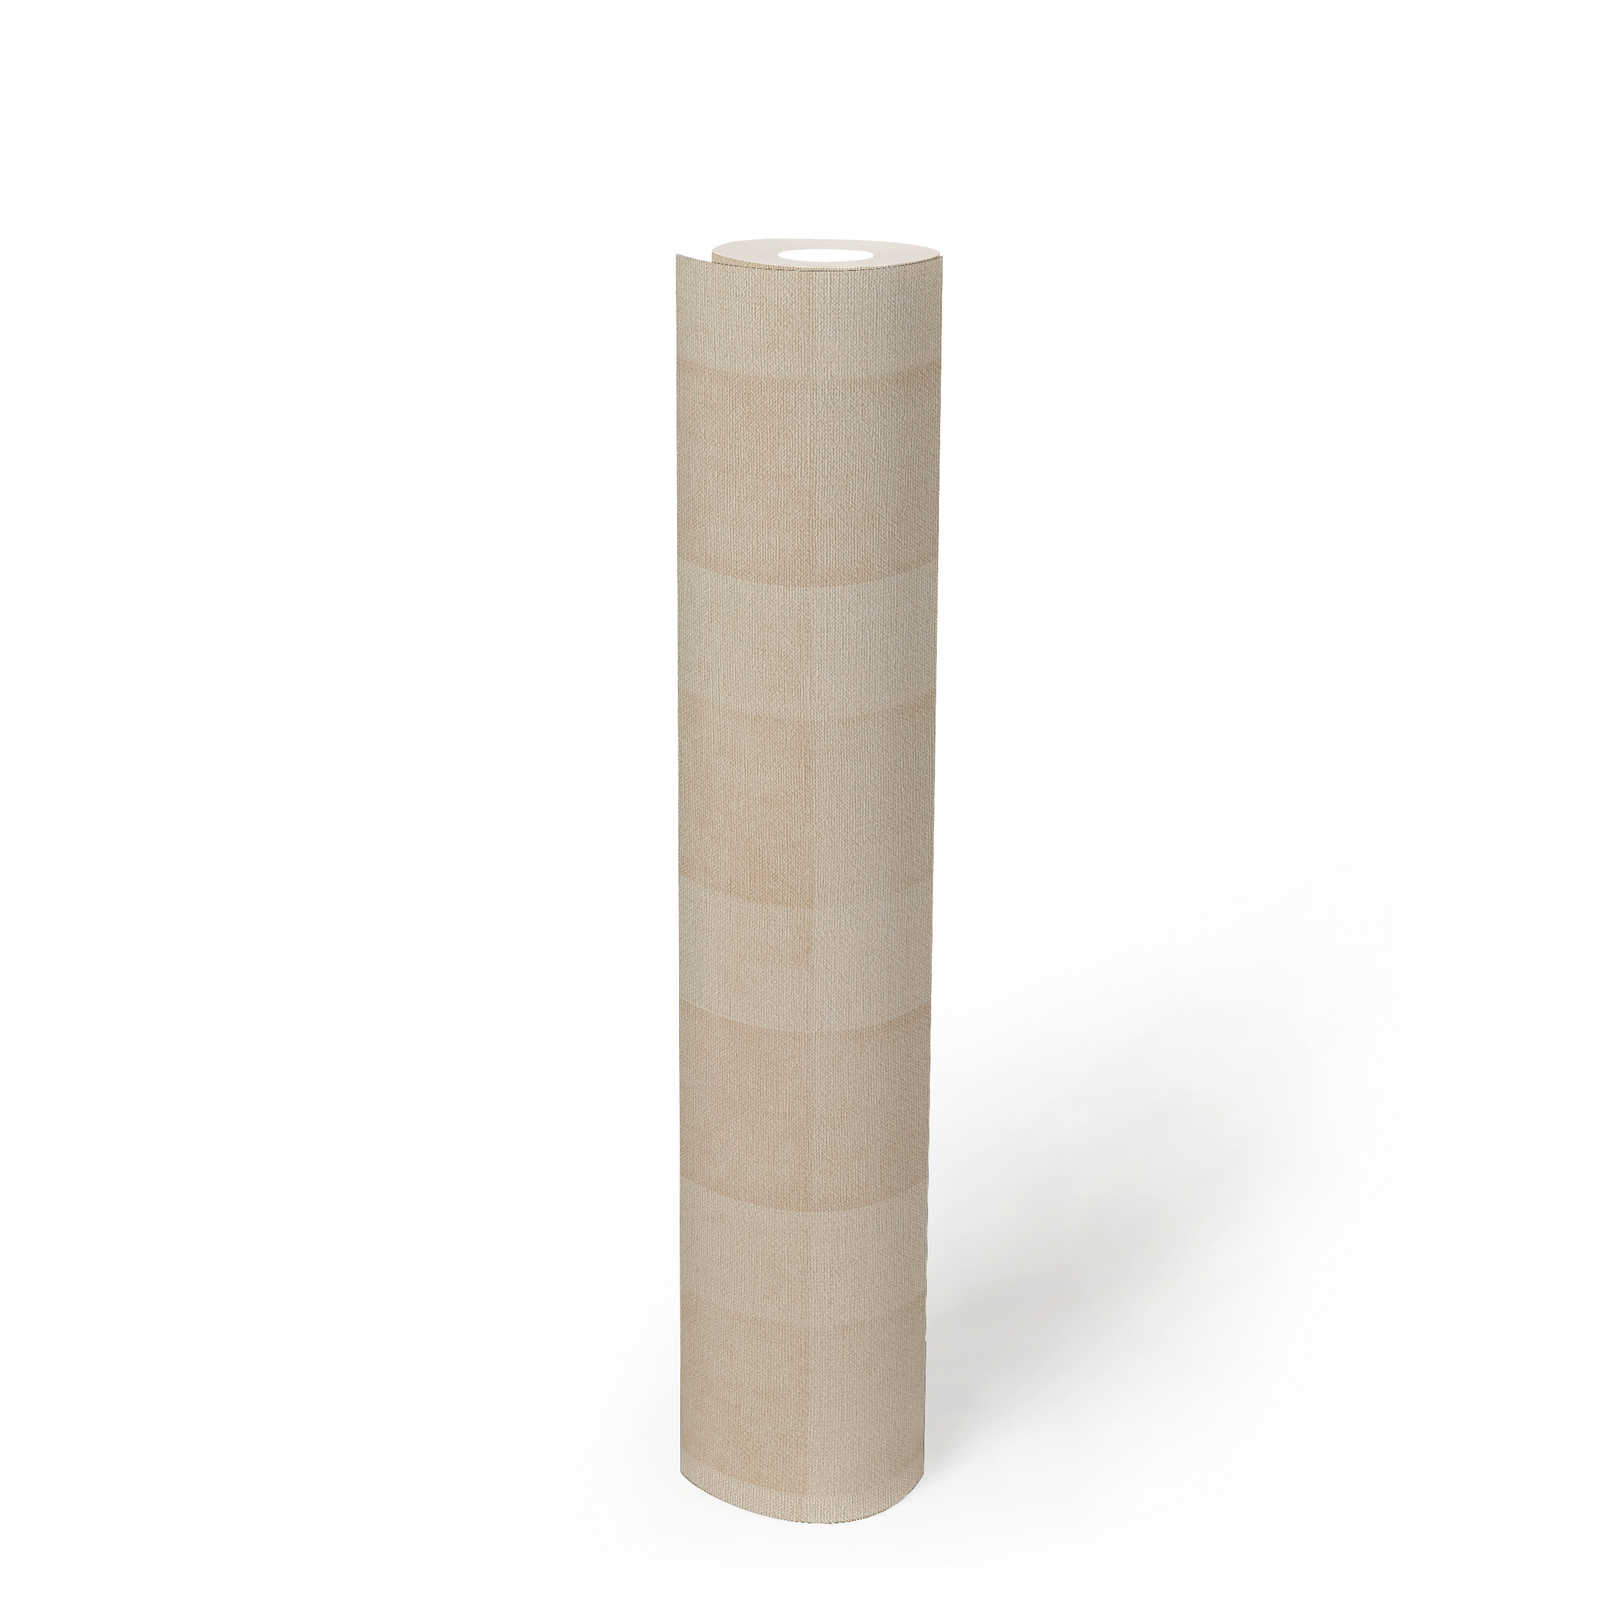             Vliesbehang PVC-vrij ruitpatroon met linnenlook - beige
        